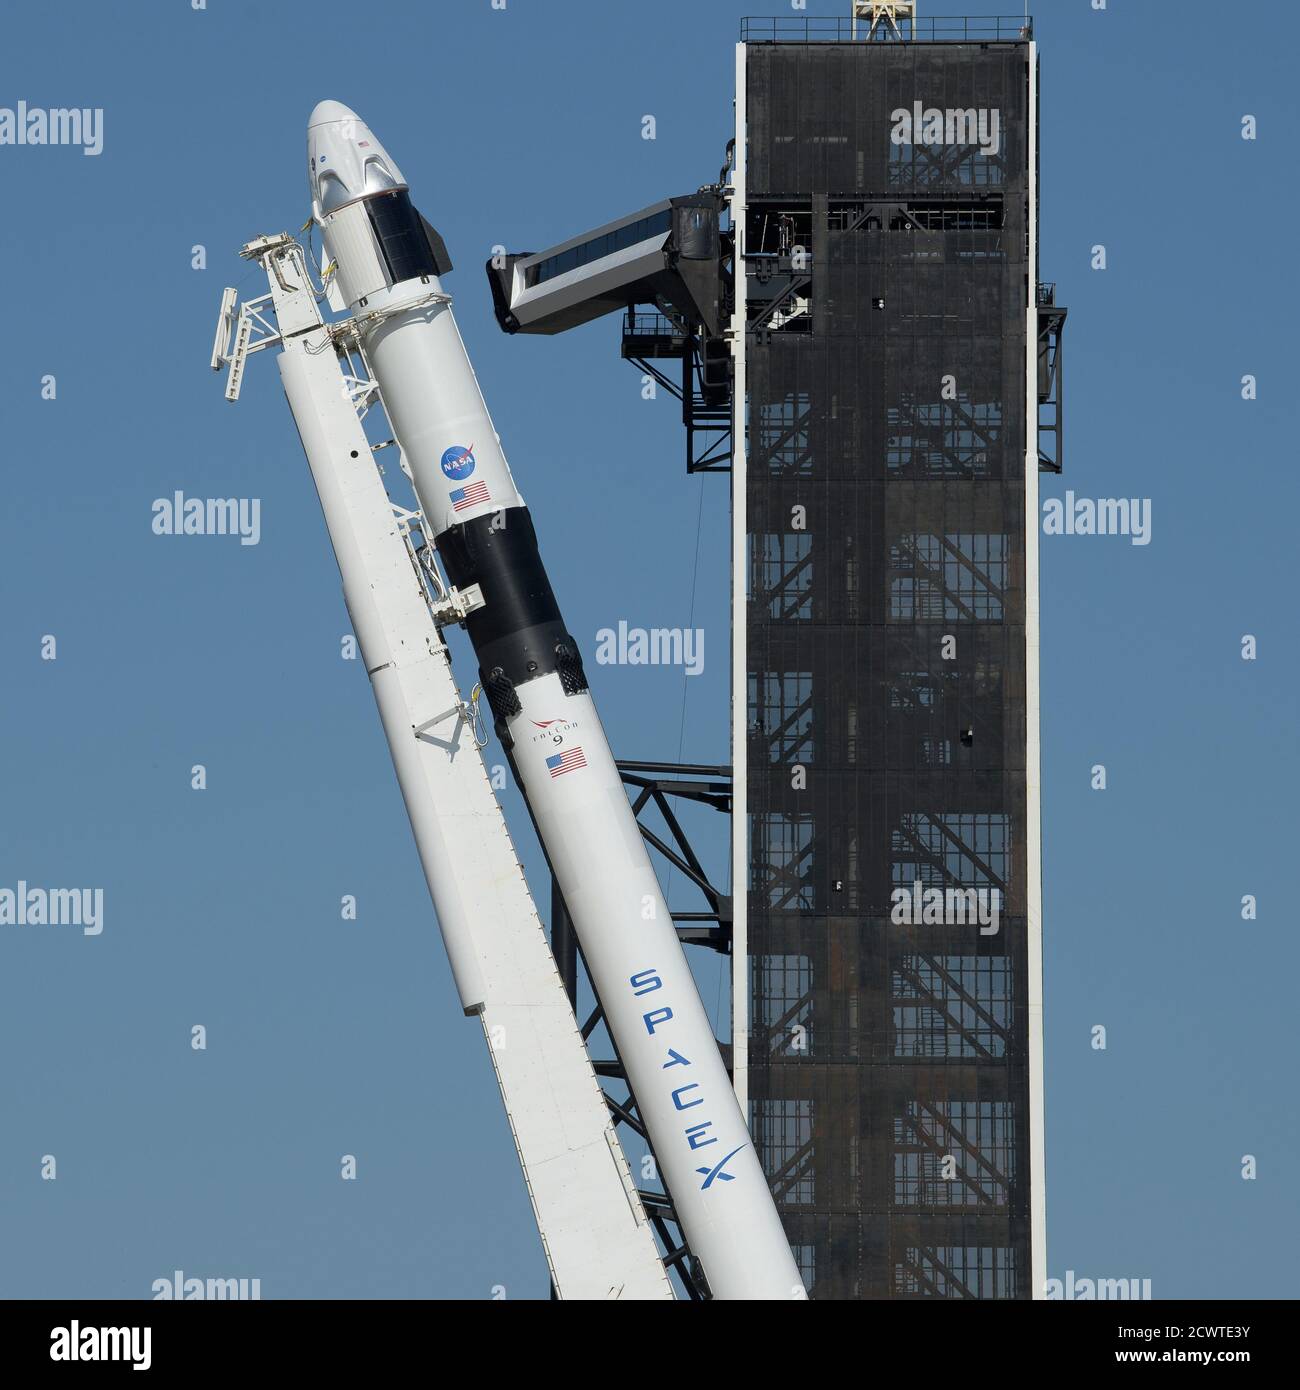 SpaceX Demo-2 Rollout EINE SpaceX Falcon 9 Rakete mit der Crew Dragon Raumsonde des Unternehmens an Bord wird gesehen, wie sie in eine vertikale Position auf der Startfläche am Launch Complex 39A angehoben wird, während die Vorbereitungen für die Demo-2 Mission weitergehen, Donnerstag, 21. Mai 2020, Im Kennedy Space Center der NASA in Florida. Die NASA SpaceX Demo-2 Mission ist der erste Start mit Astronauten der Raumsonde SpaceX Crew Dragon und Falcon 9 Rakete zur Internationalen Raumstation im Rahmen des Commercial Crew Program der Agentur. Der Flugtest wird als End-to-End-Demonstration von SpaceX Crew Transport s dienen Stockfoto